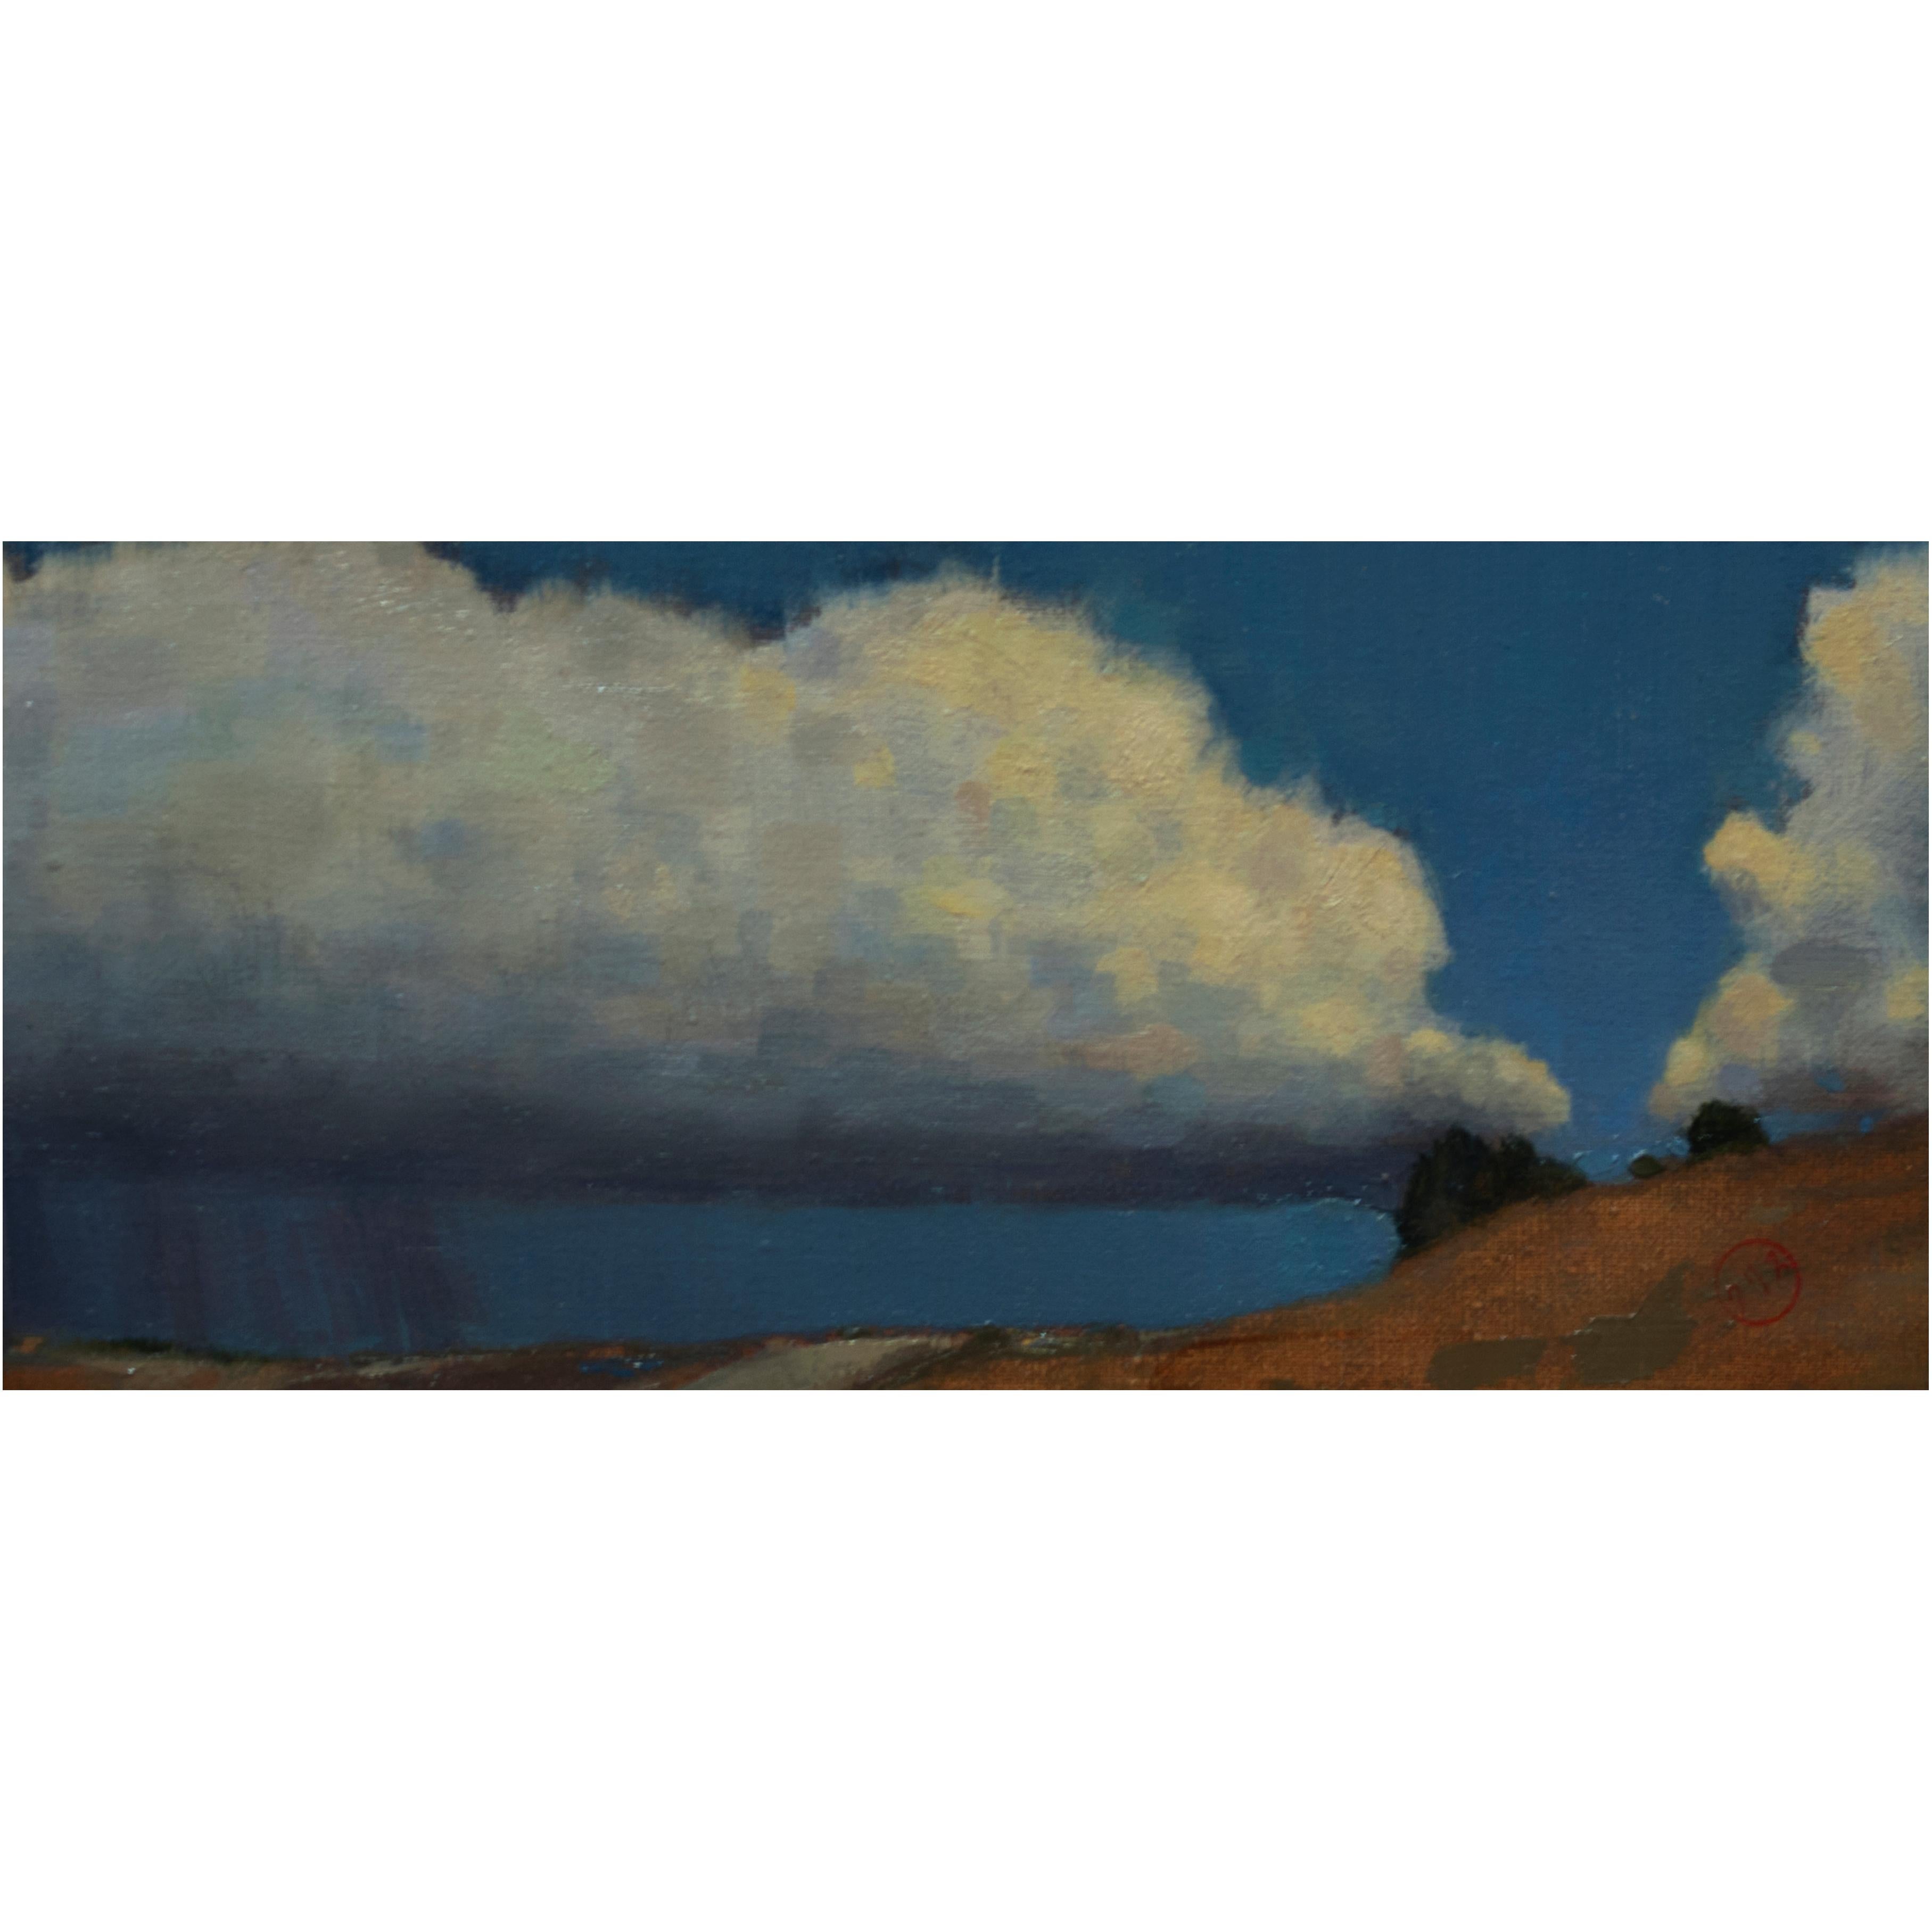 Dieses 9,5" x 14" große, gerahmte Ölgemälde des Künstlers Chris Brizzard zeigt die üppigen weißen Wolken eines aufkommenden Sturms vor einem hellblauen Himmel, der ein Stück Prärie-Landschaft zeigt.

Chris Brizzard begann seine formale Ausbildung